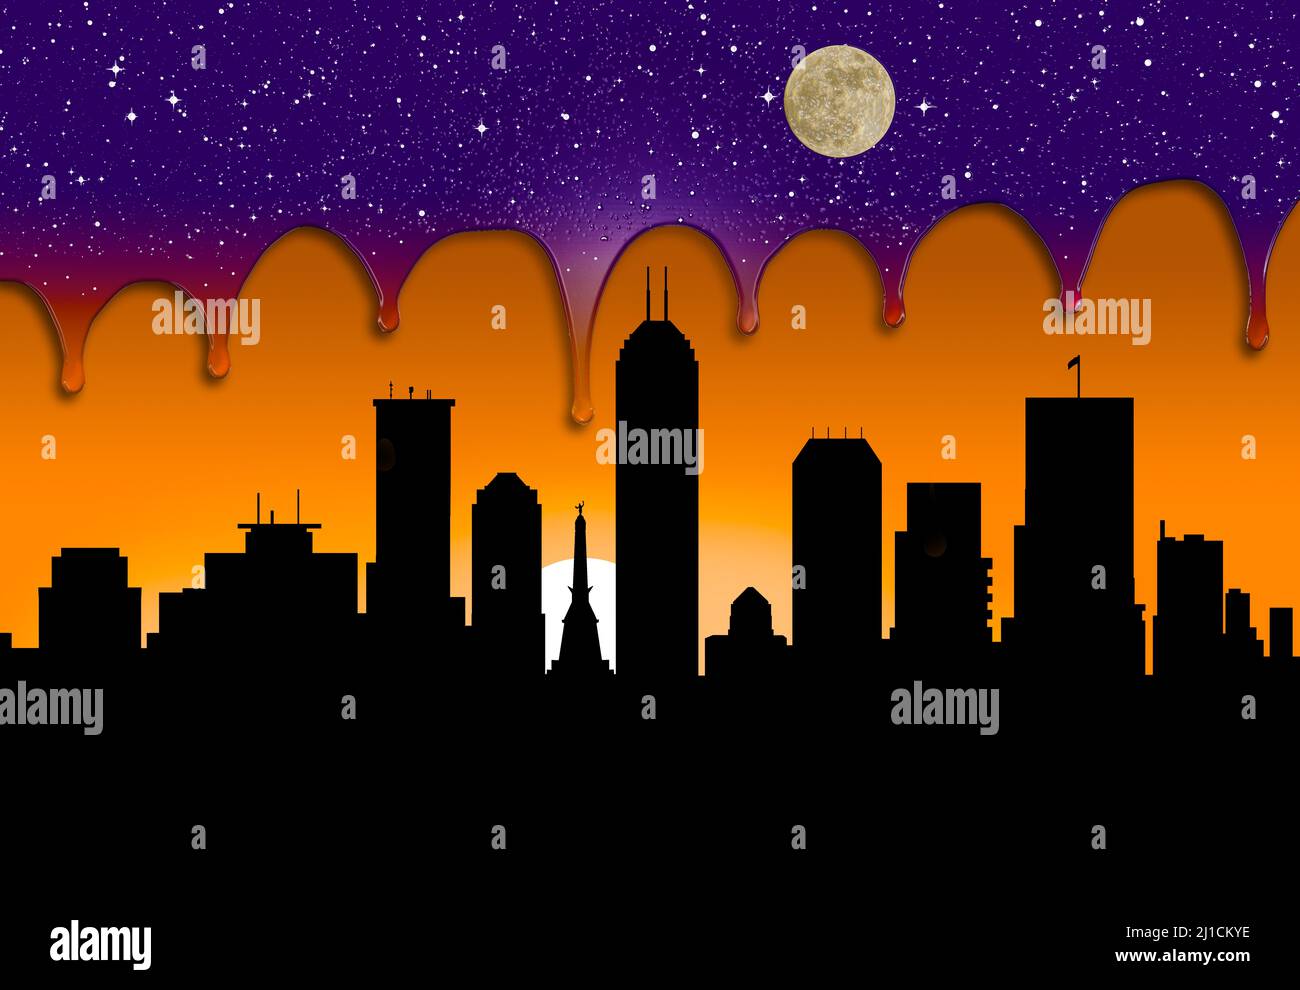 La nuit fond dans la journée à la fin d'une journée dans une ville dans cette illustration de 3 jours. Banque D'Images